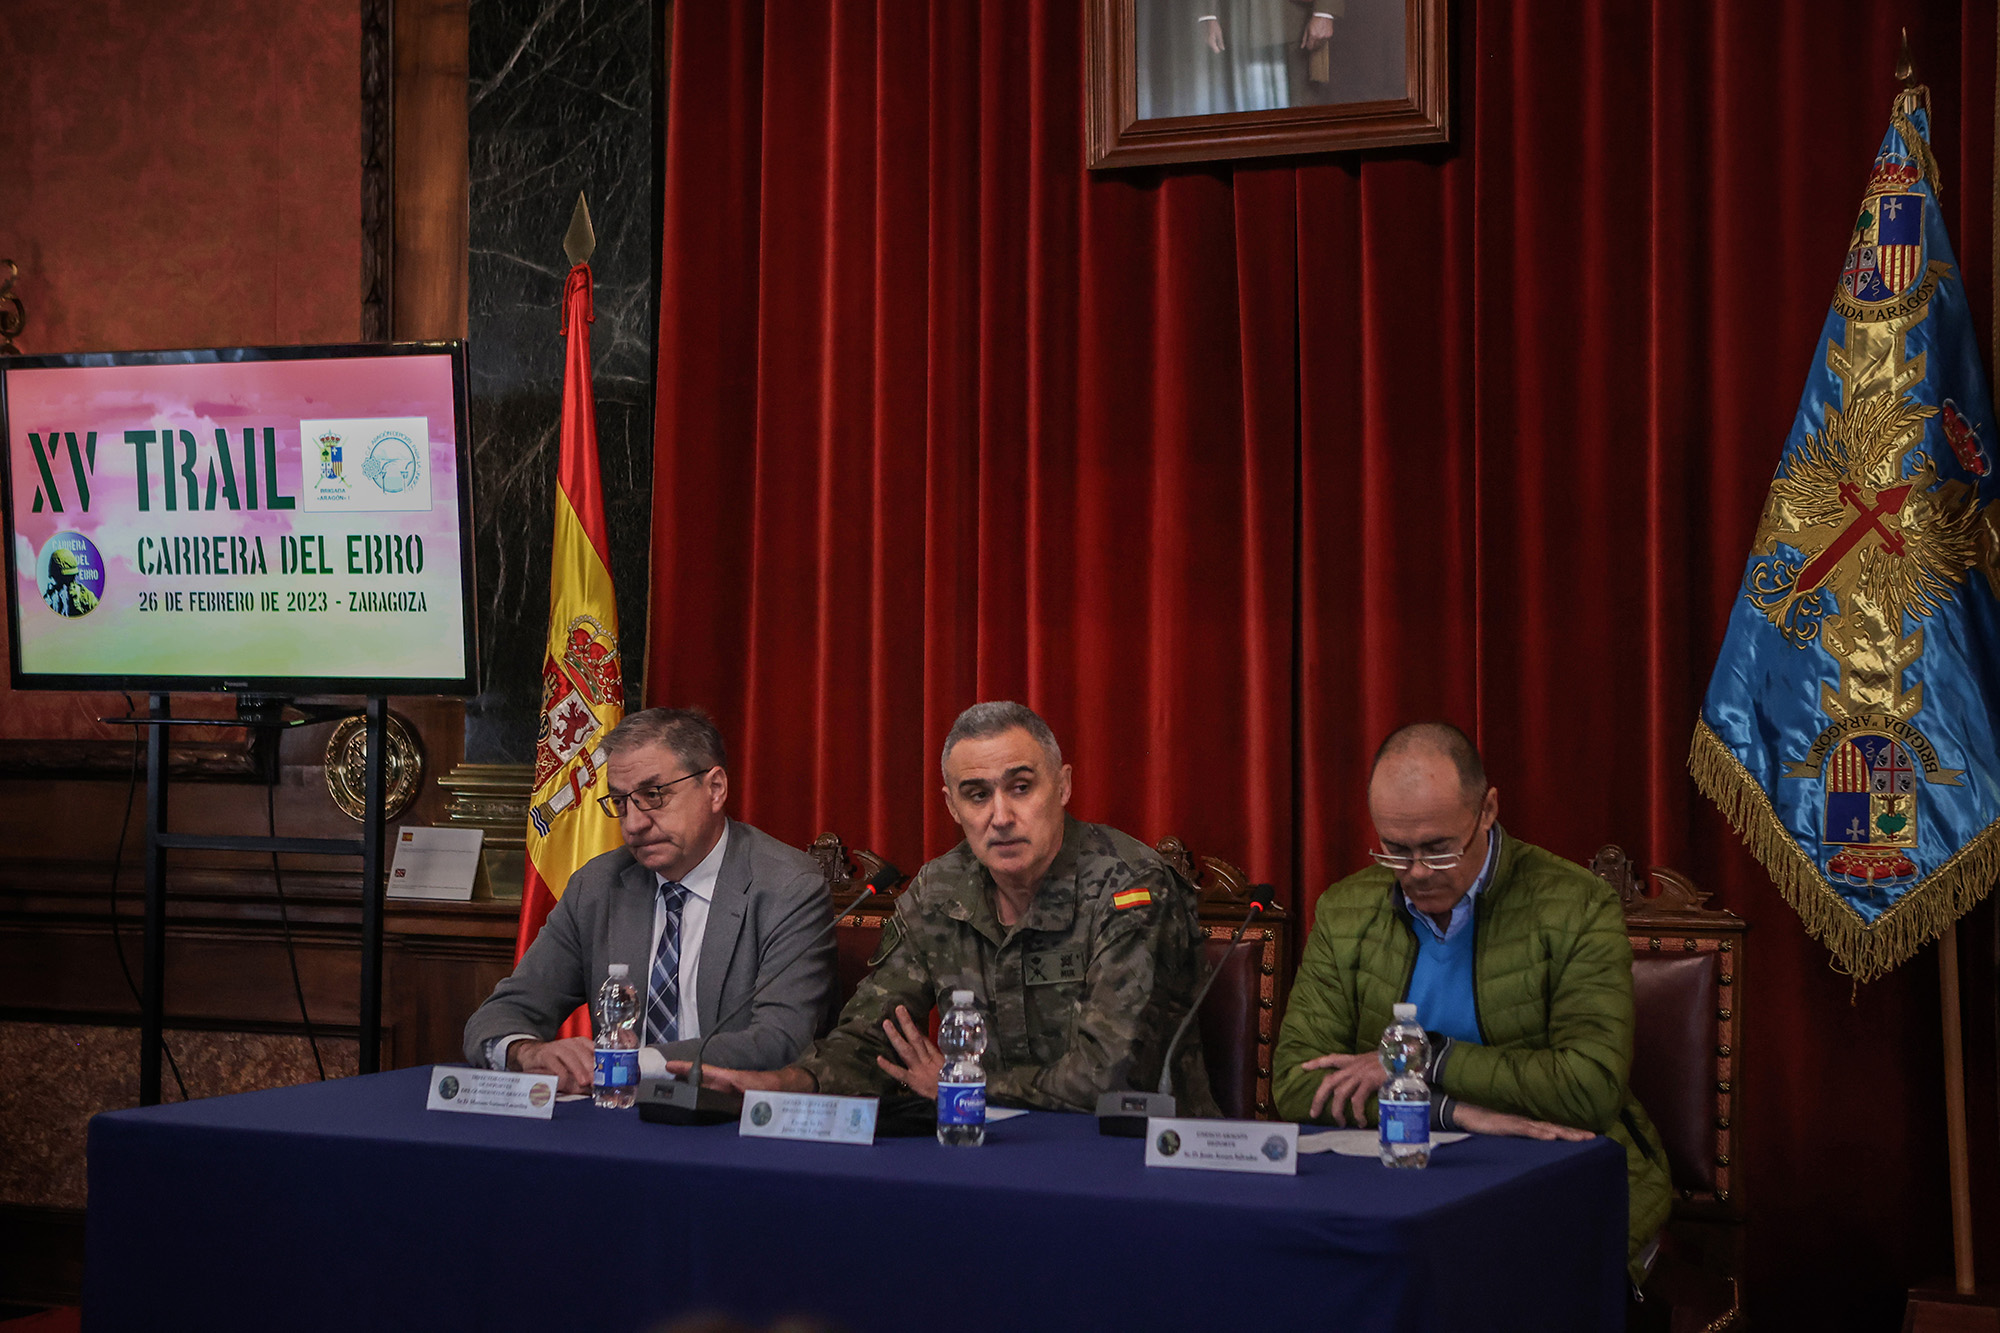 Presentación de la XV edición de la Carrera del Ebro 2